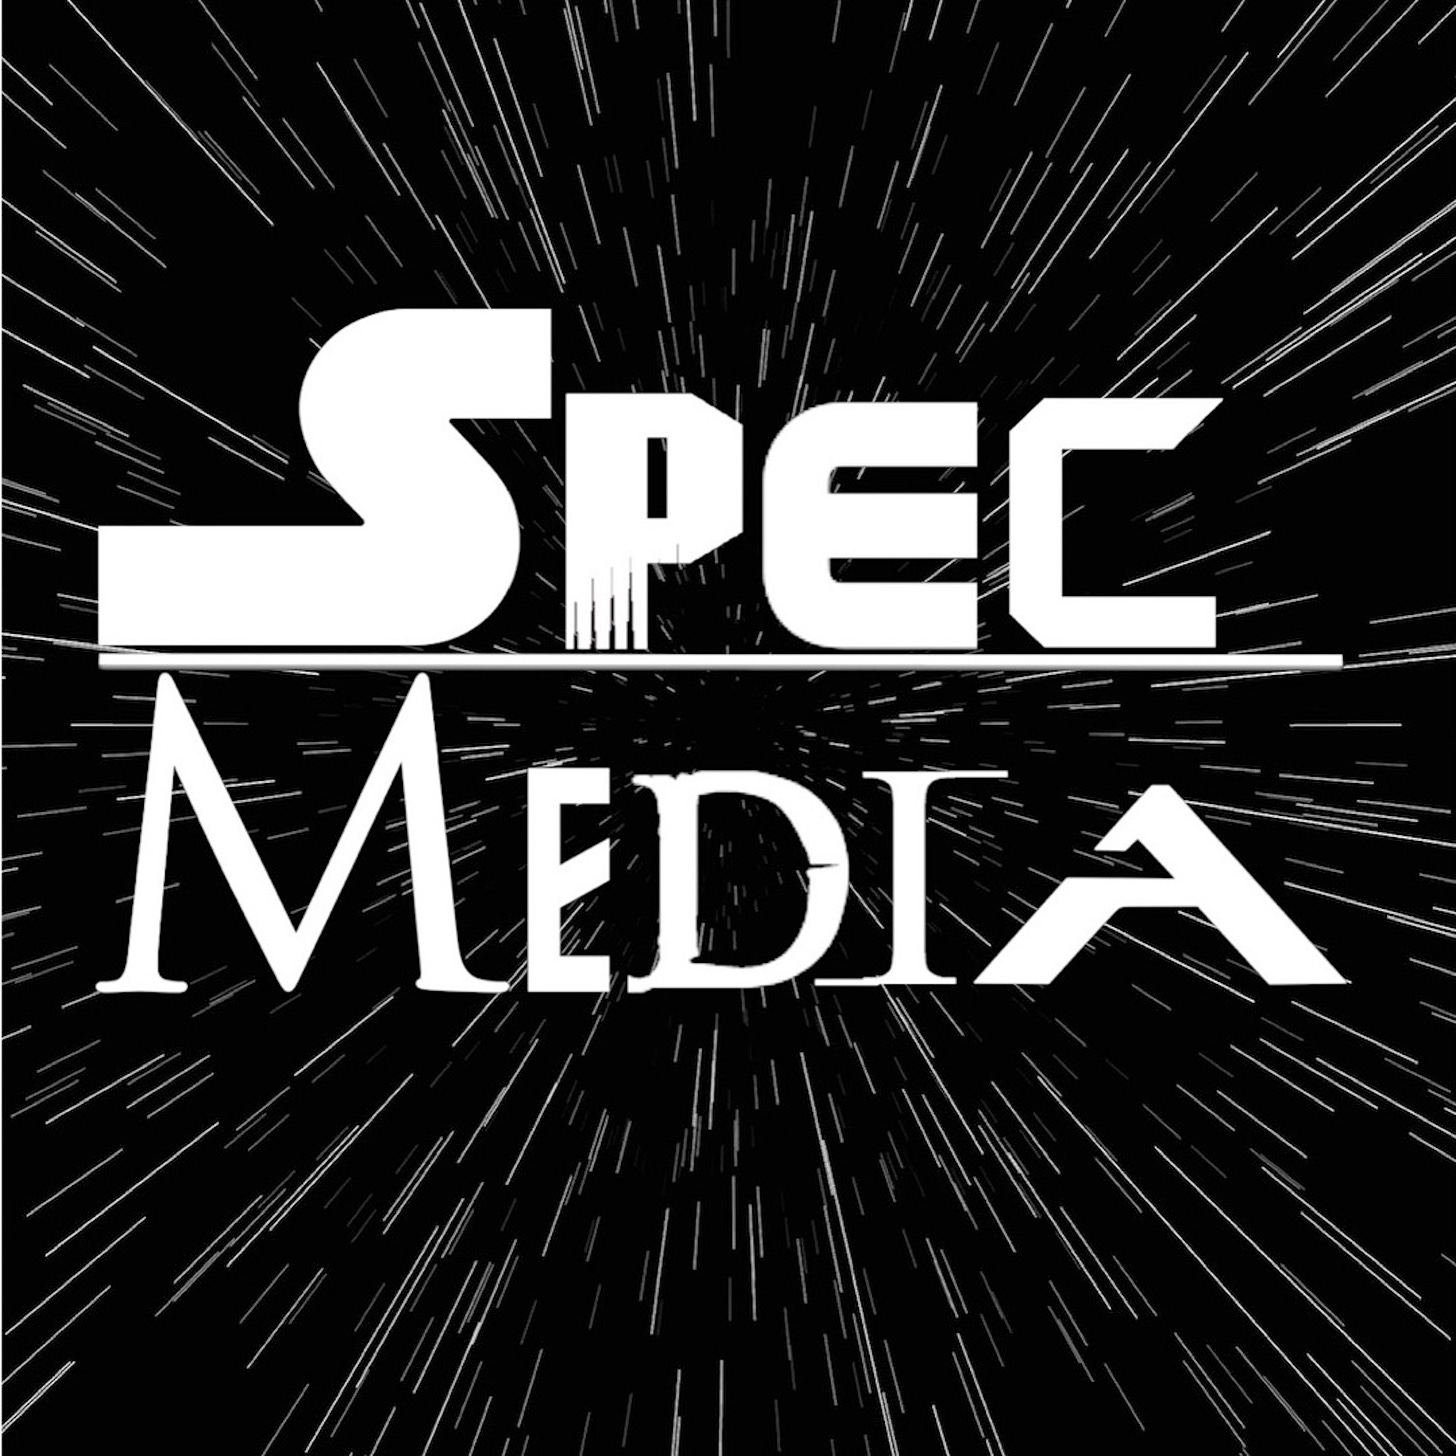 Spec Media